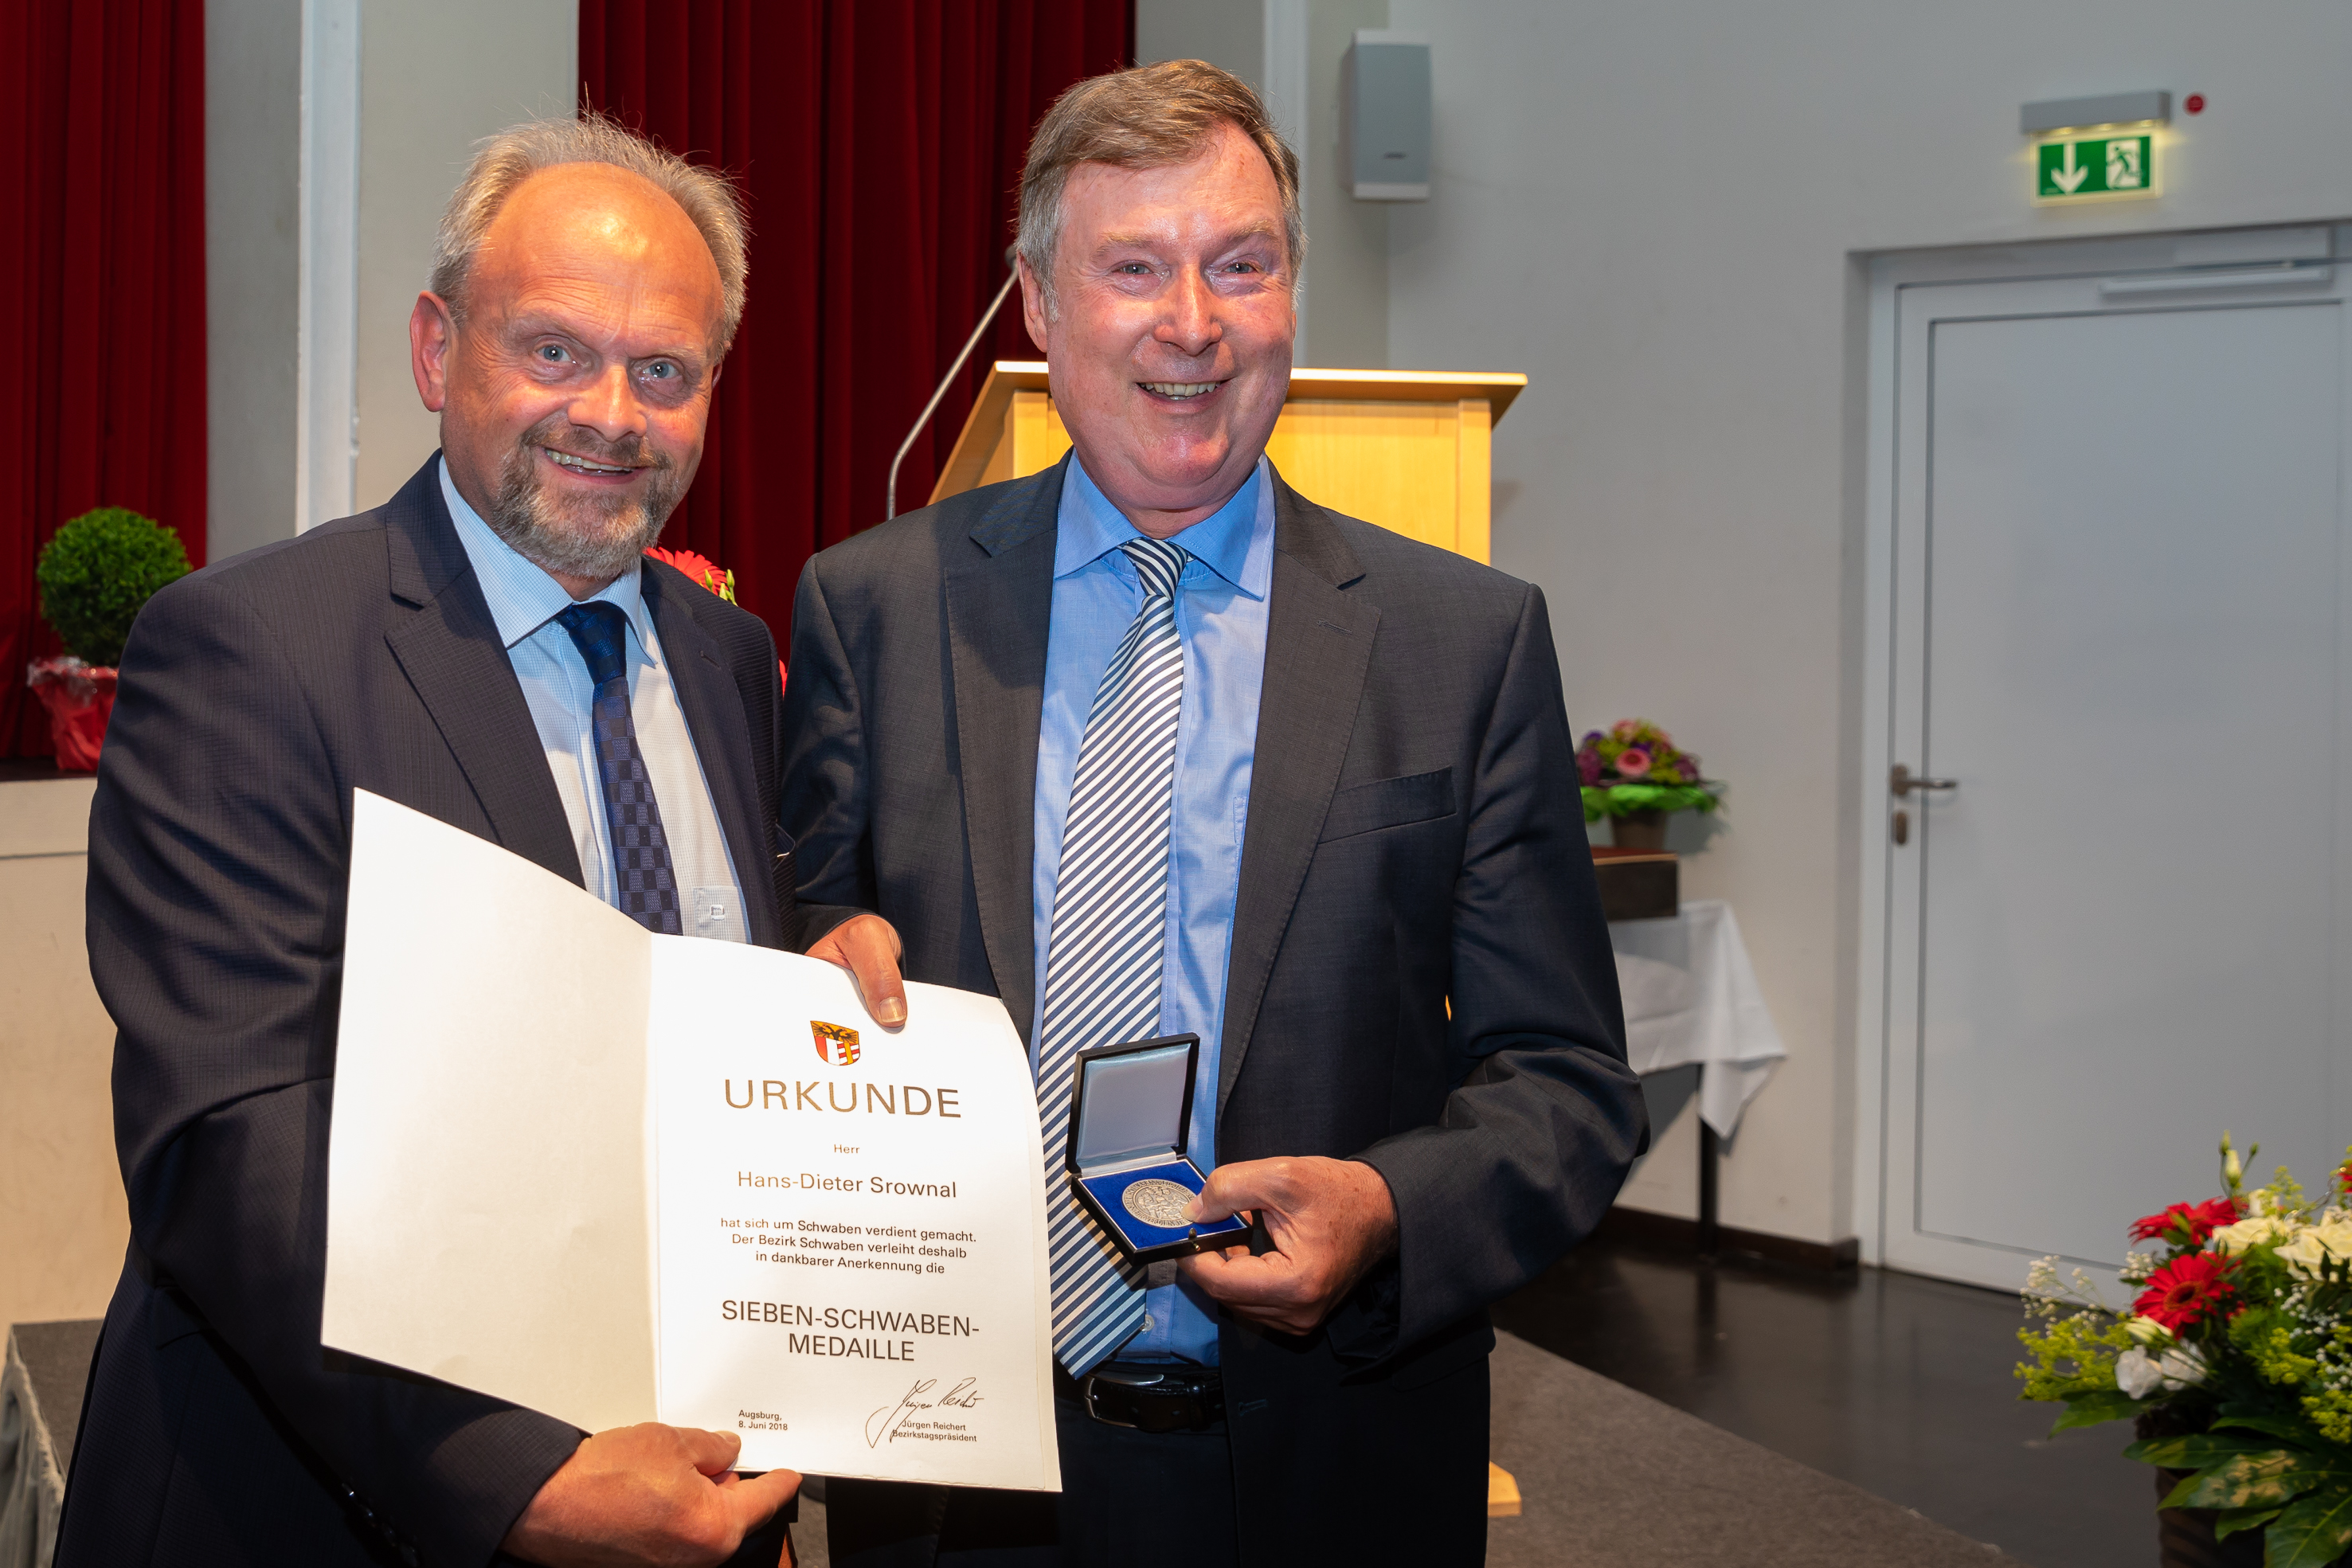 von links: Bezirkstagsvizepräsident Alfons Weber mit dem langjährigen Vorstandsmitglied des Dominikus-Ringeisen-Werkes Hans-Dieter Srownal